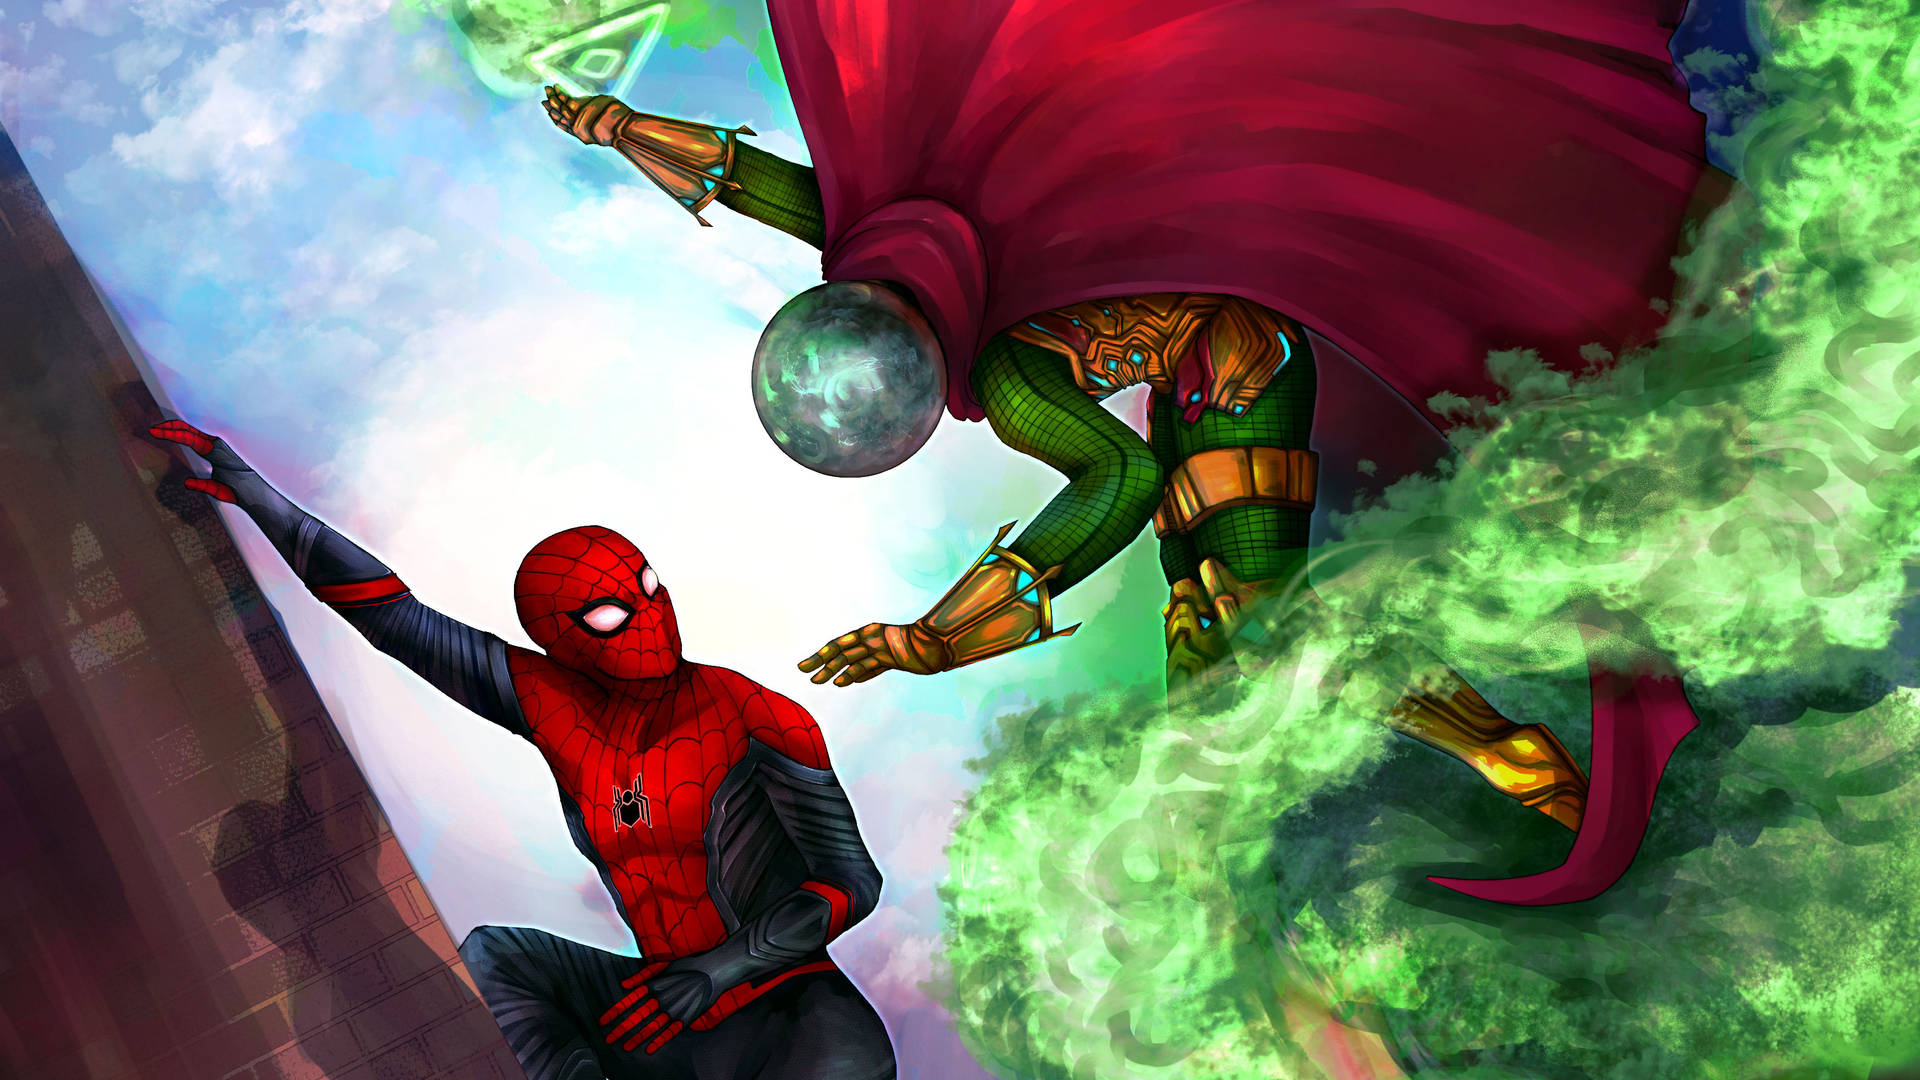 Mysterio Versus Spiderman Background